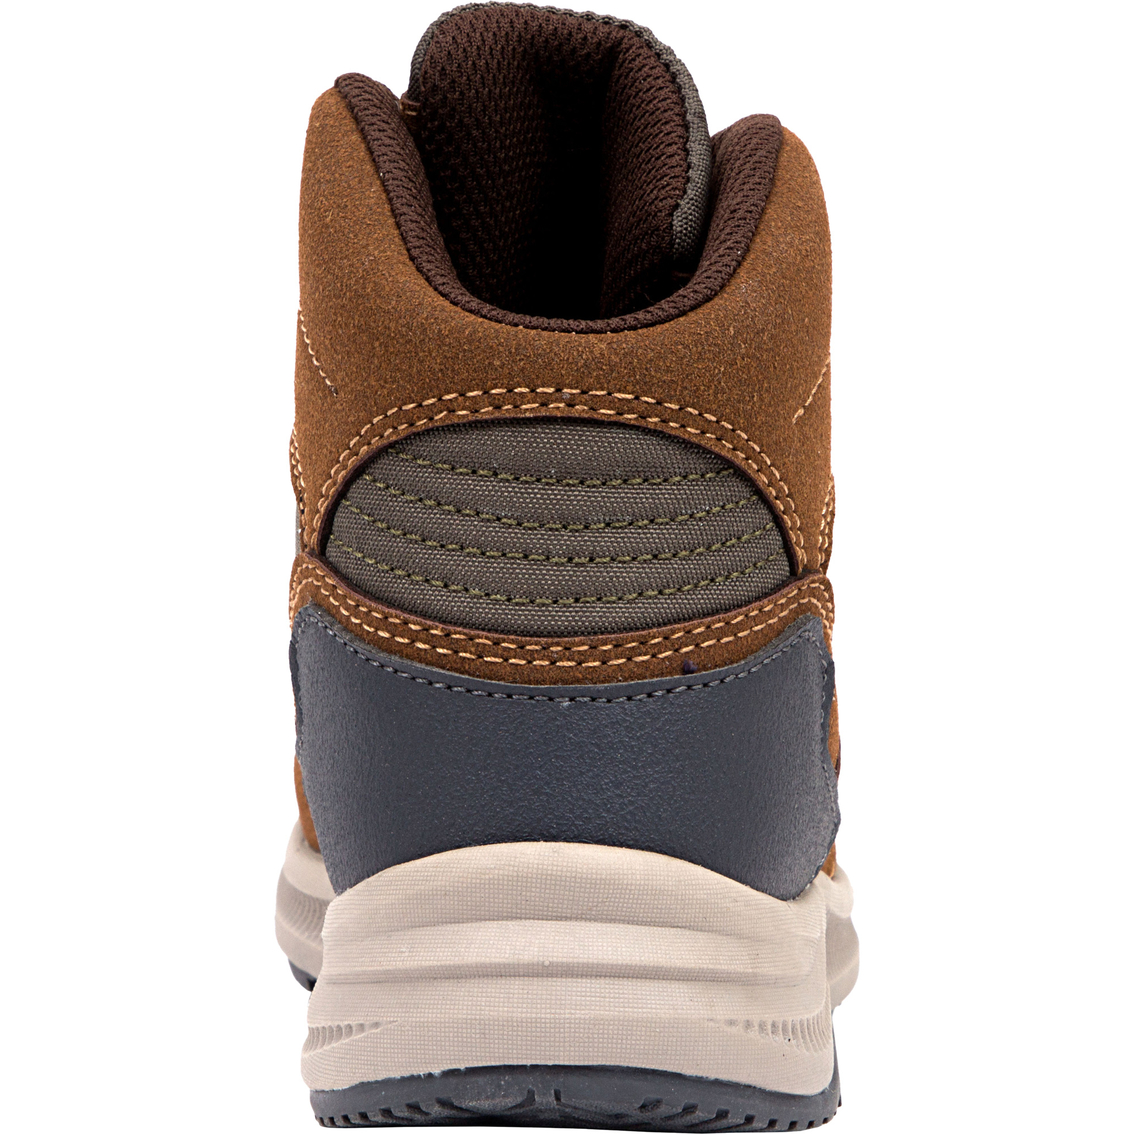 Deer Stags Grade School Boys Peak Jr Casual Hybrid Hiker High Top Sneaker Boots - Image 8 of 8